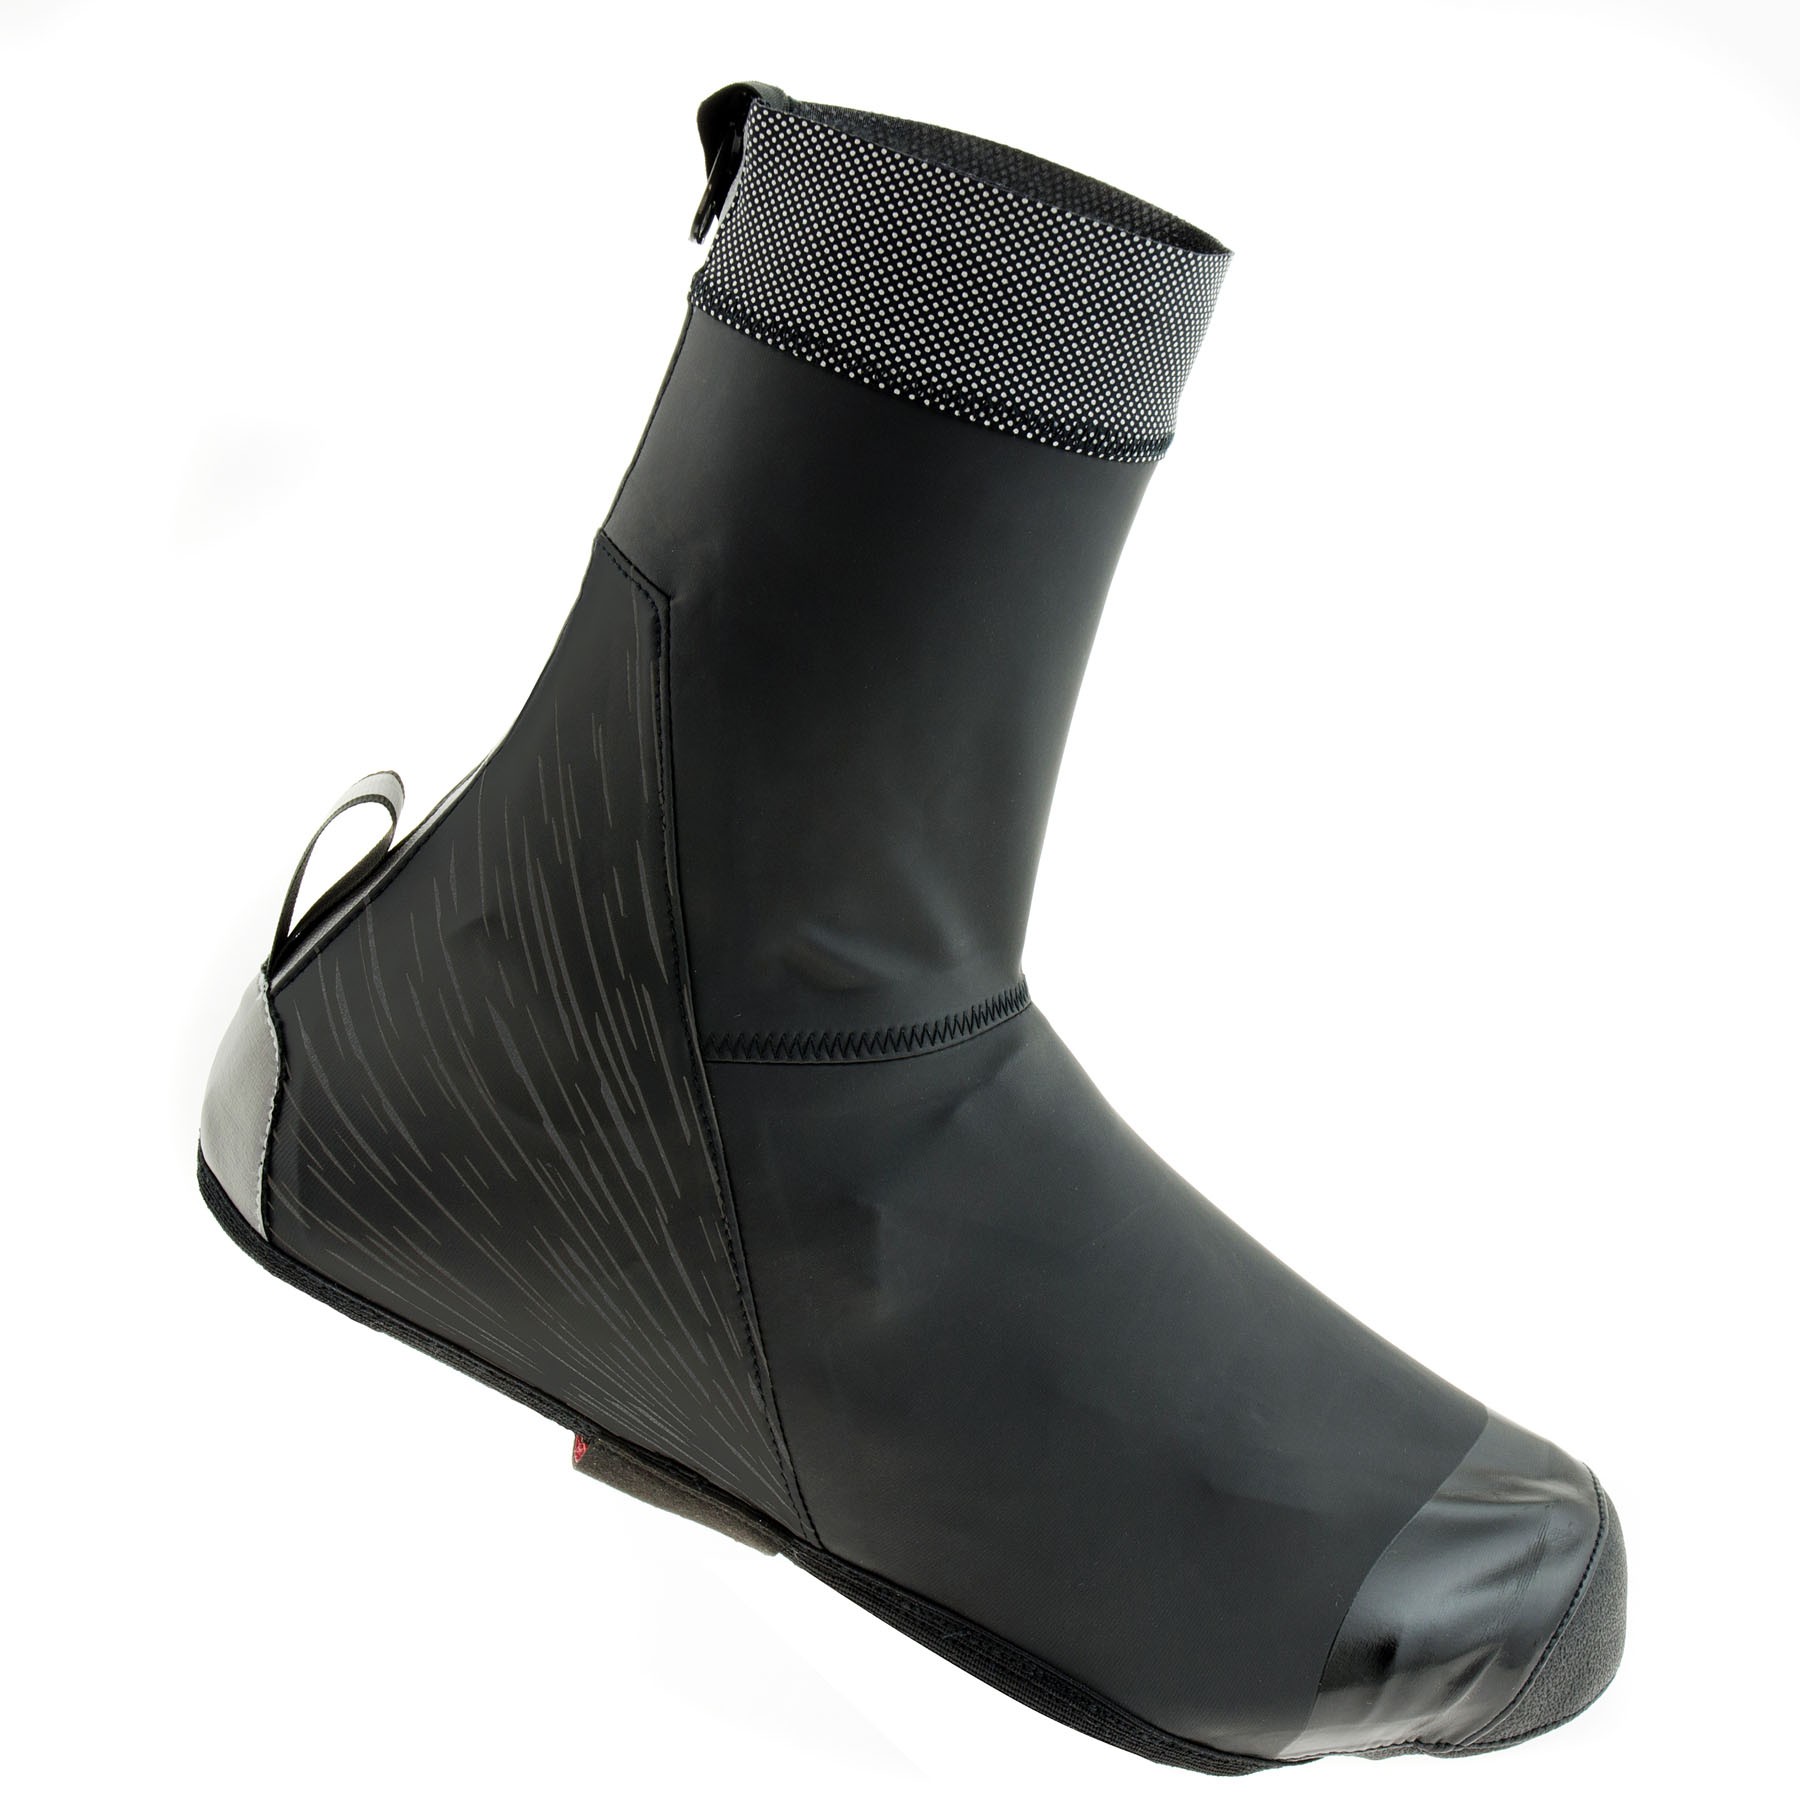 Agu light rain couvre chaussure noir